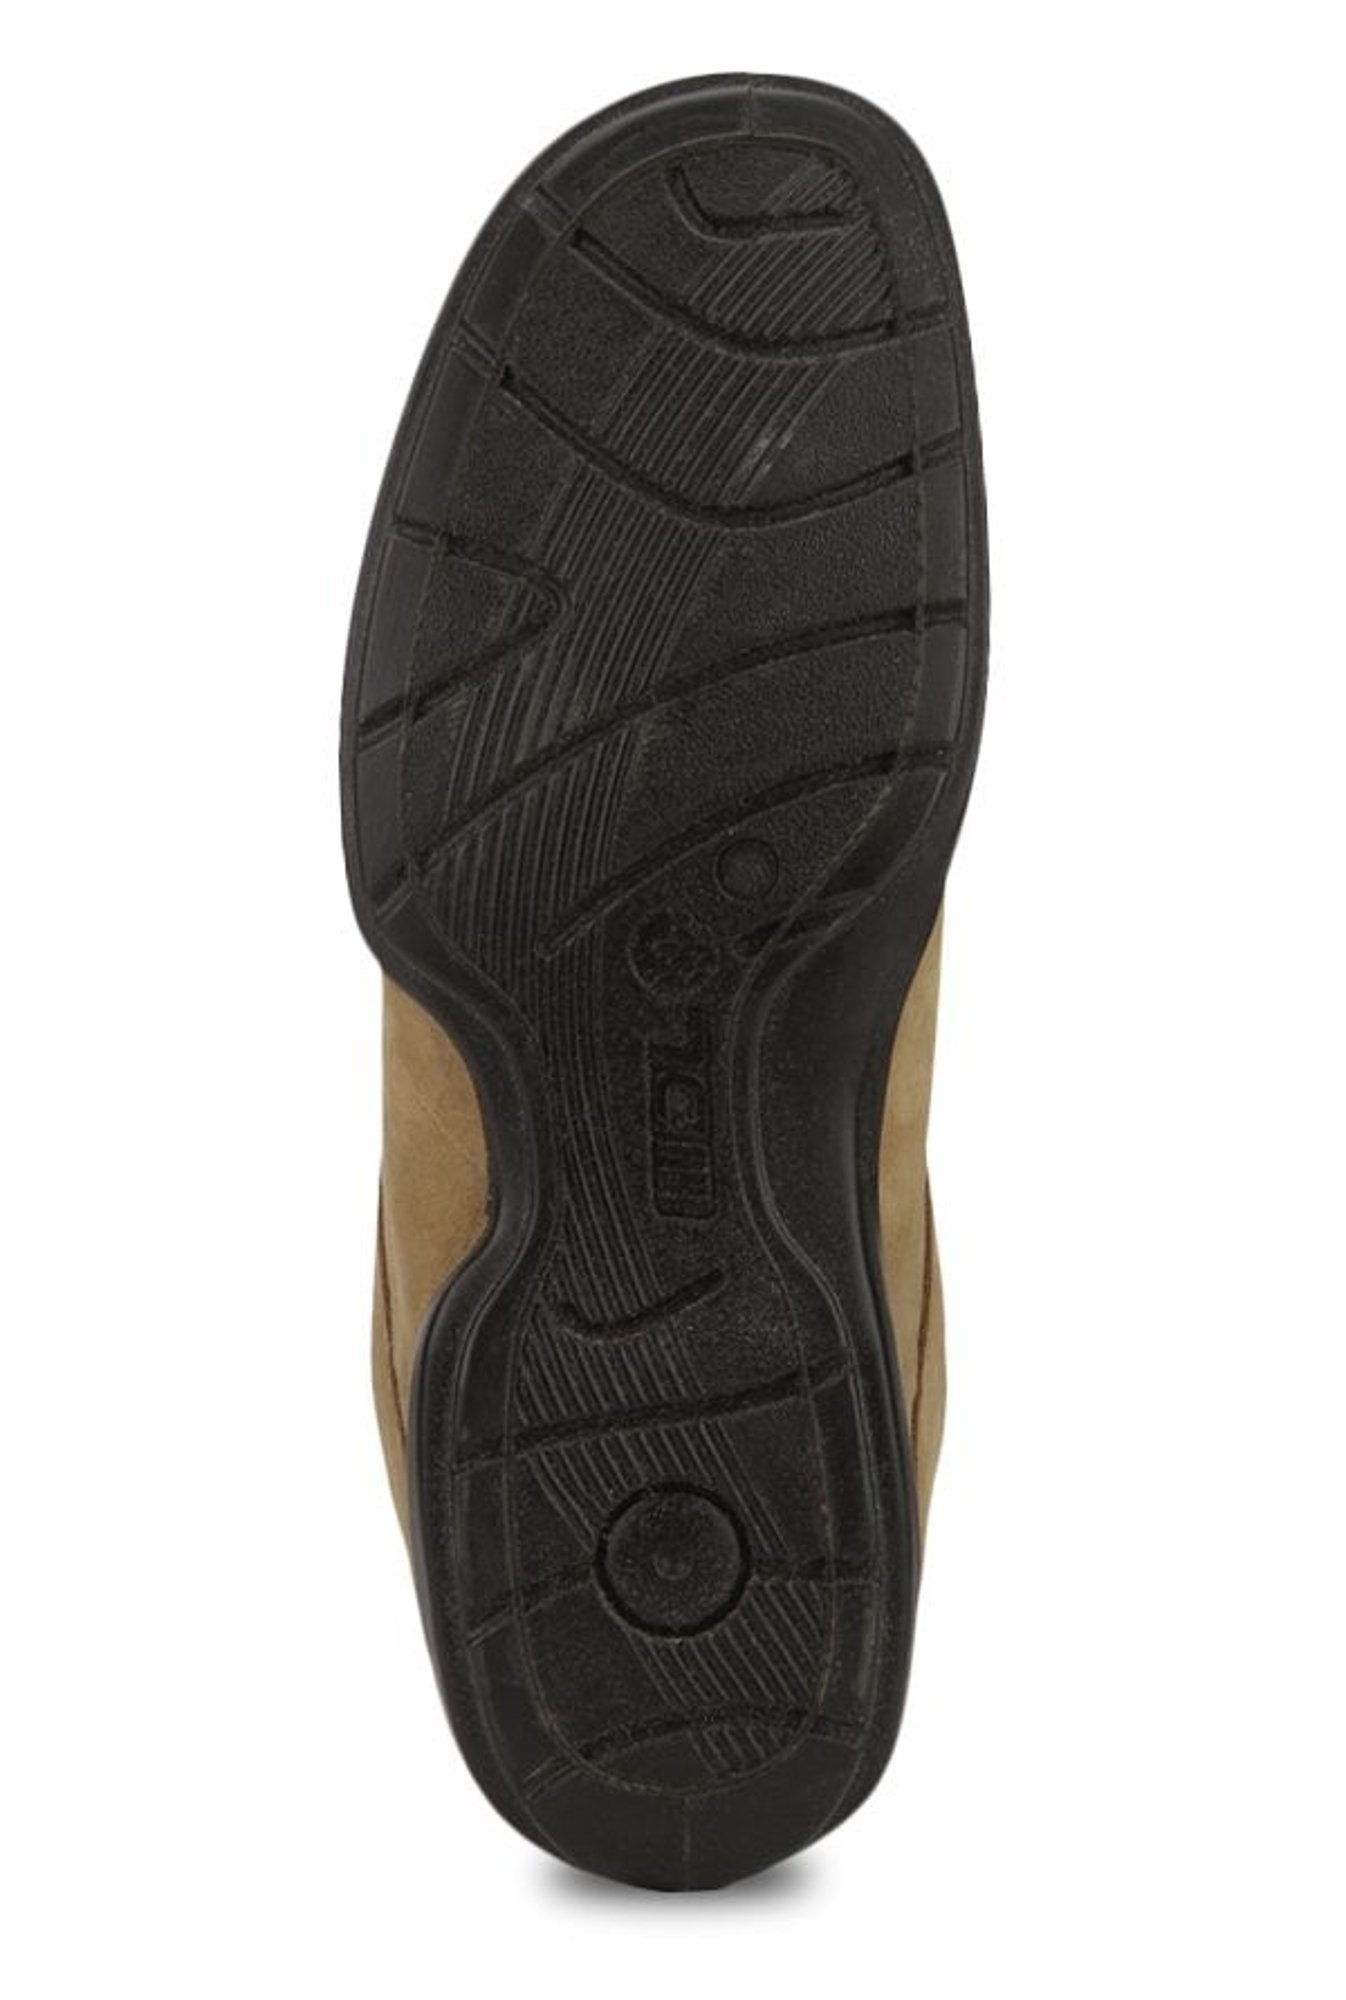 Buy Woodland Men's Khaki Leather Espadrille Flats - 11 UK/India (45 EU) at  Amazon.in